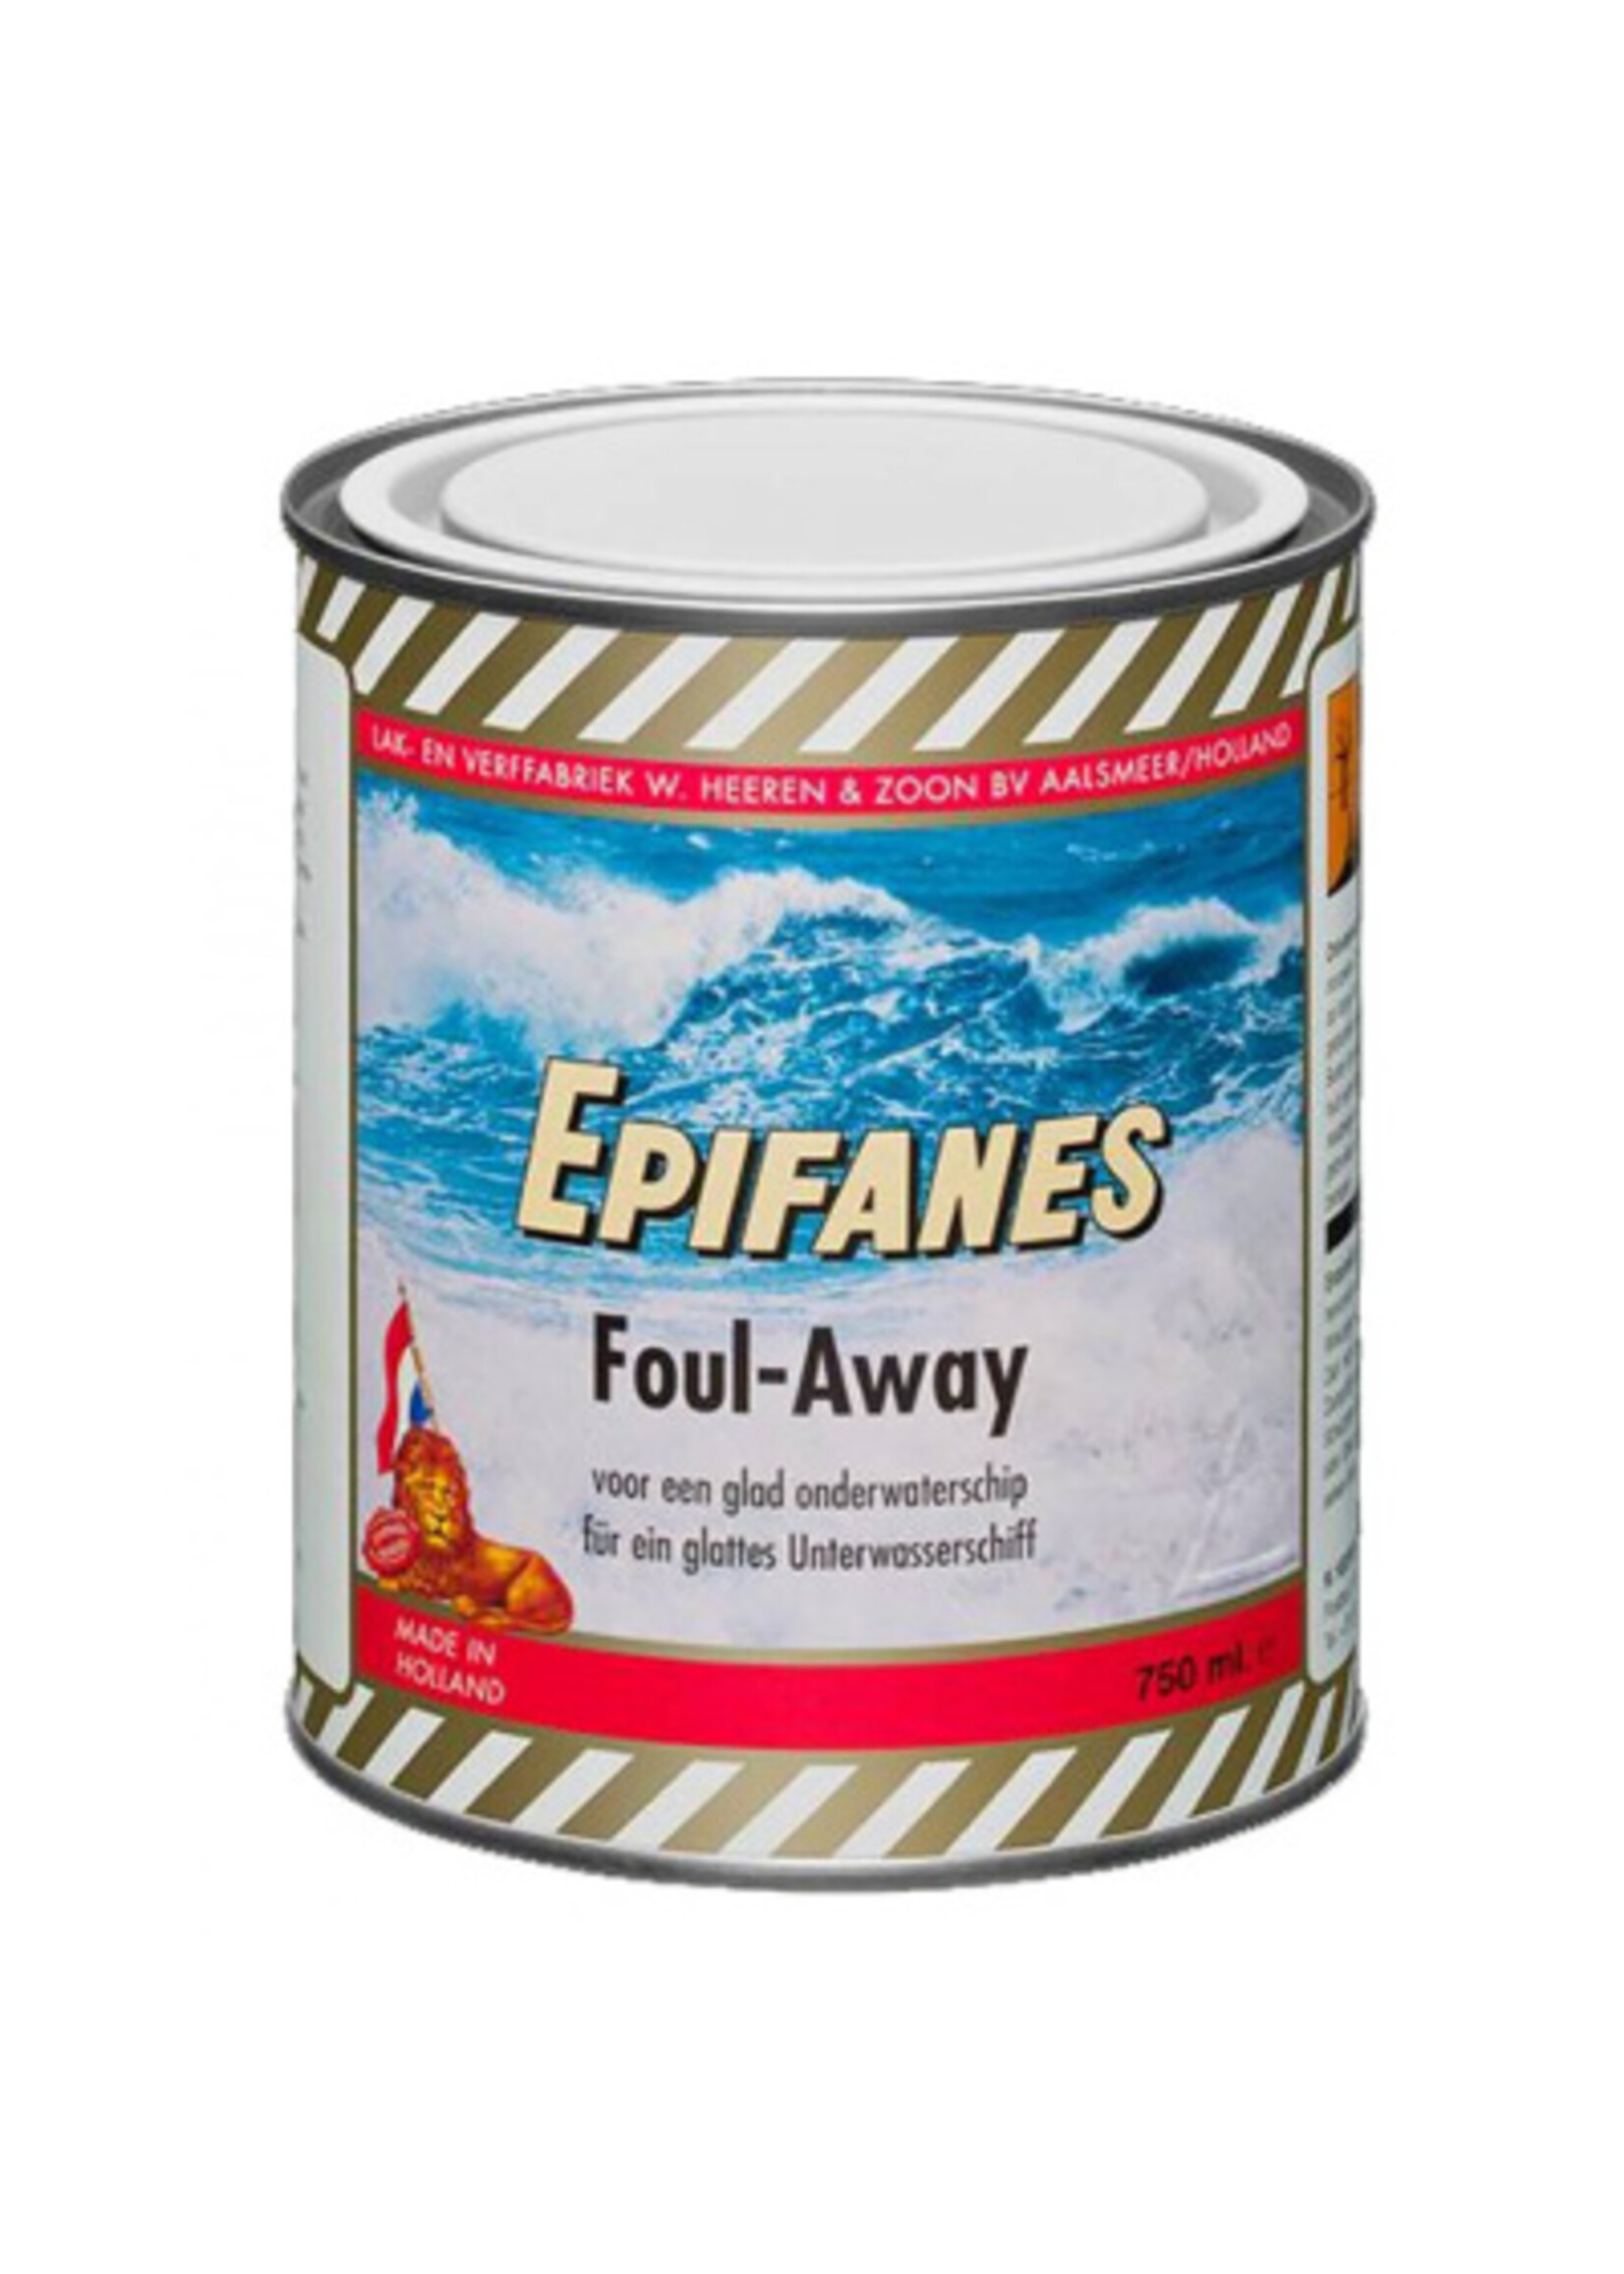 Epifanes Foul-Away - Antifouling Wit